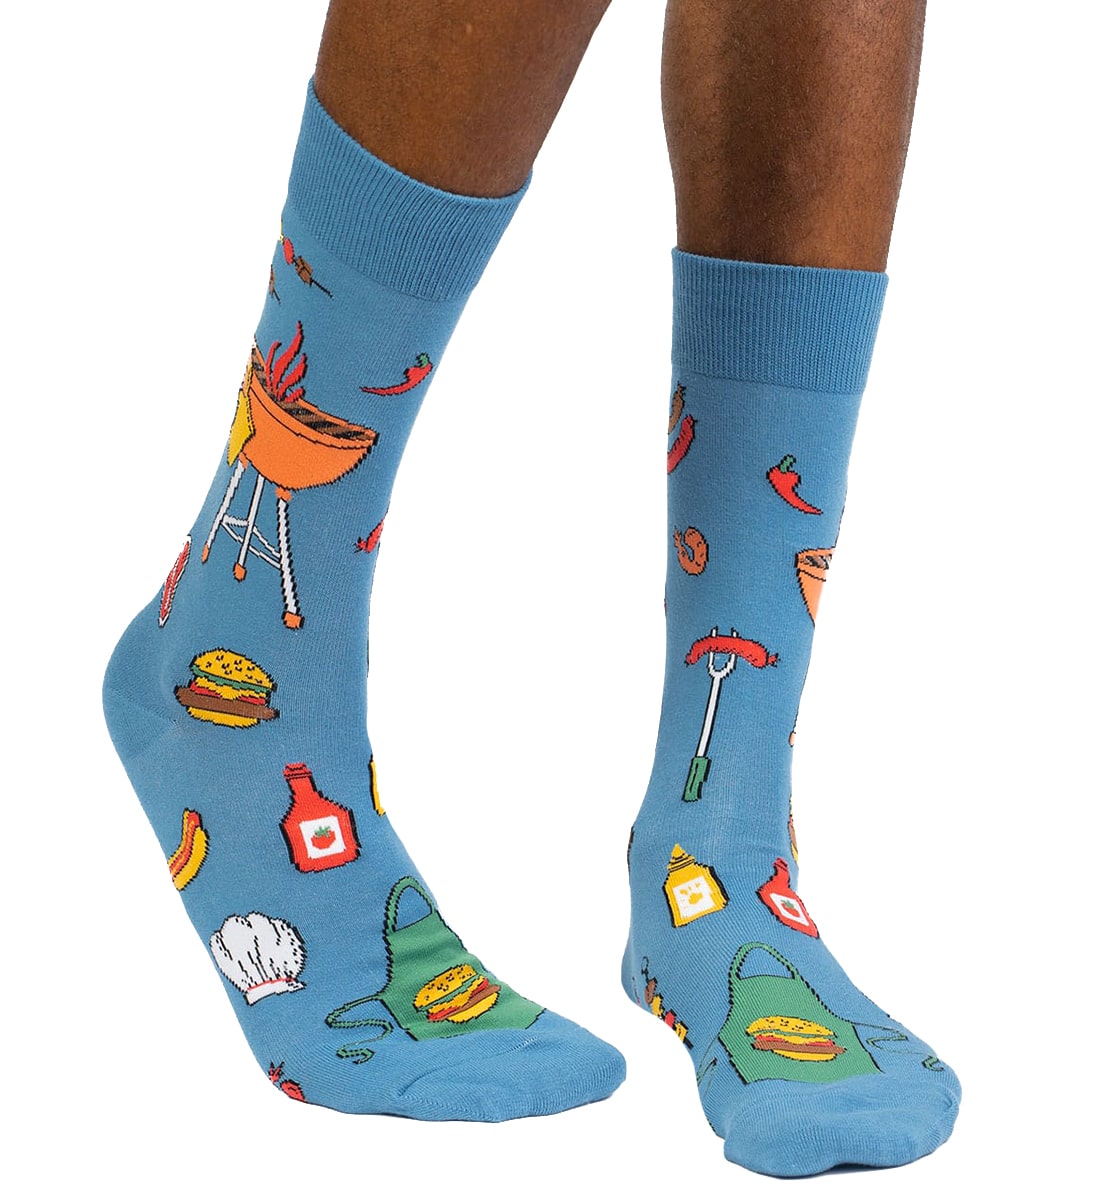 SOCK it to me Men's Crew Socks (mef0440),Grillin It - Grillin It,One Size